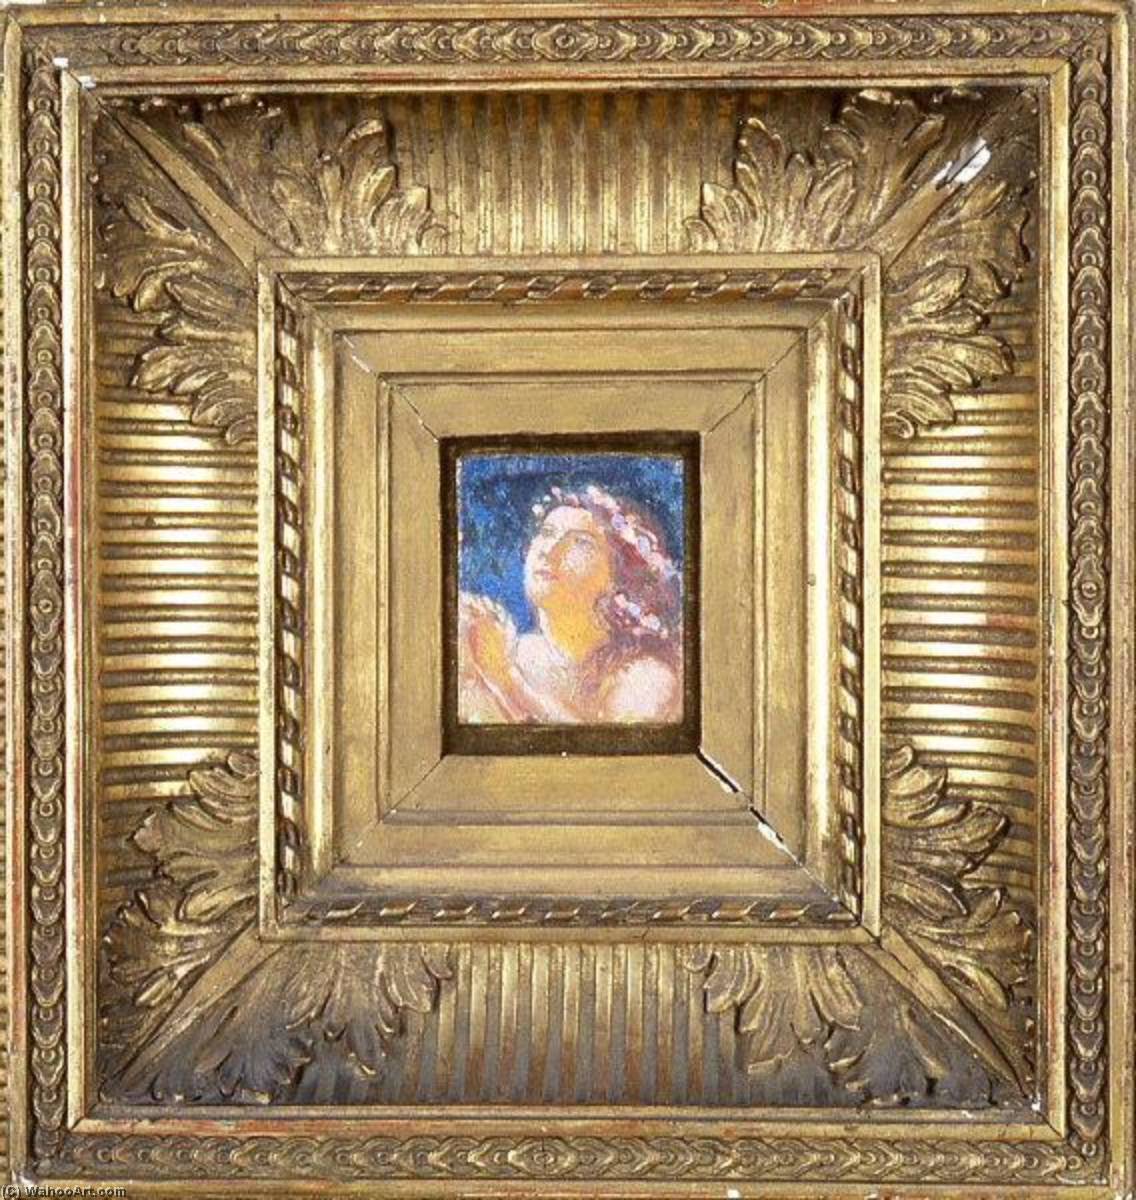 購入 美術館の複製、美術複製、絵画複製、美術館の品質プリント、美術品の複製、有名な絵画の複製、博物館の品質再現、キャンバスにアートプリント Orante fleurie バイ Denis Maurice (1870-1943, France) | ArtsDot.com